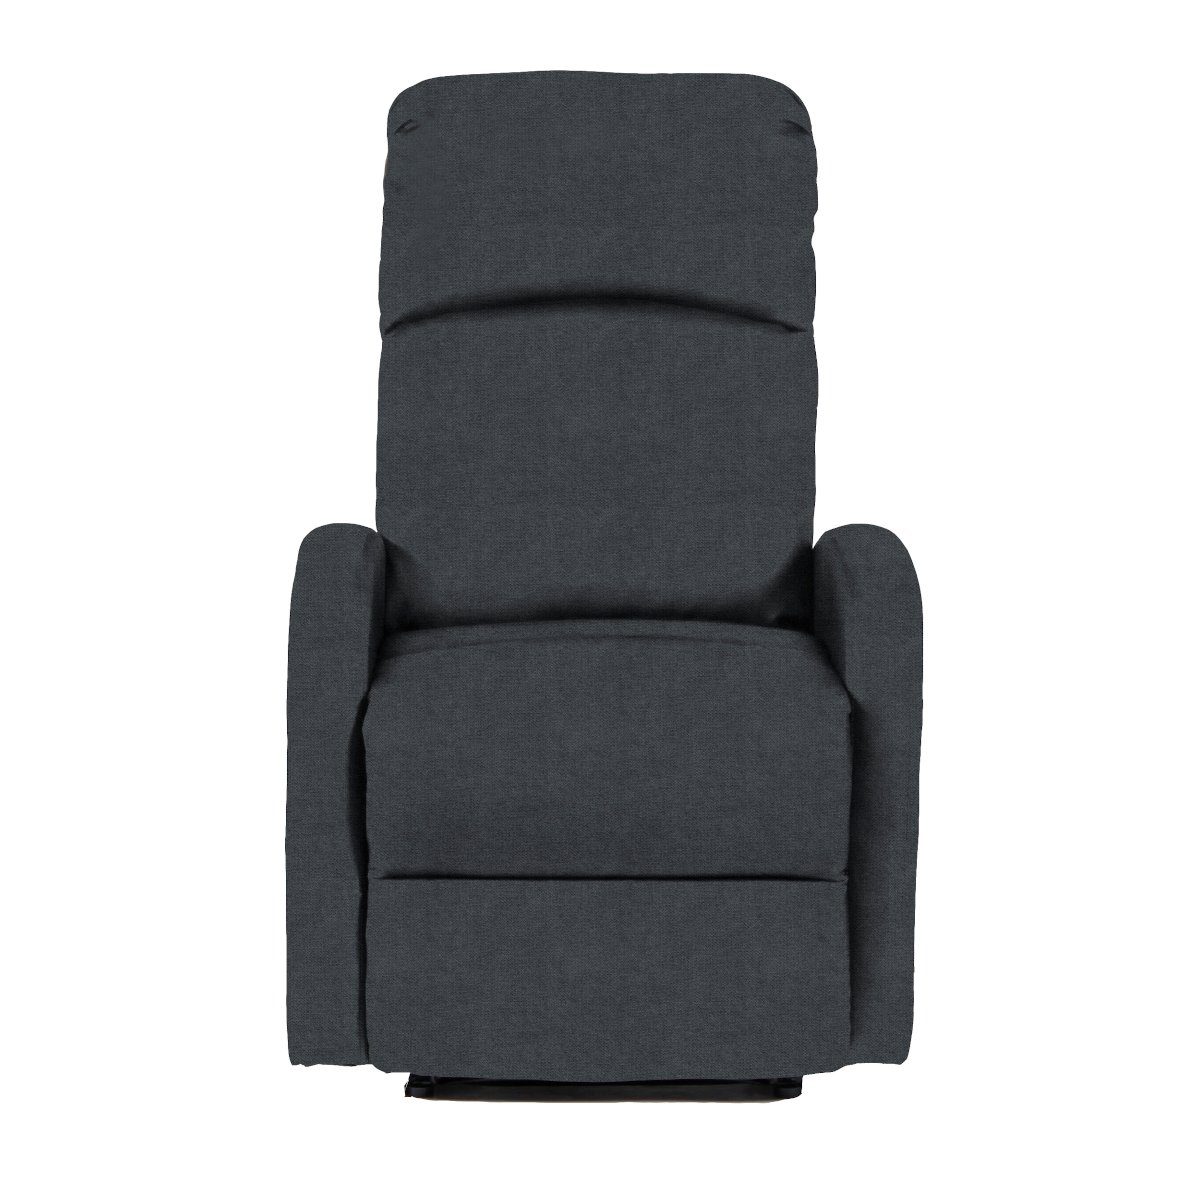 SVITA Relaxsessel LEX, weich gepolstert, ergonomisch hoher Dunkelgrau Dunkelgrau geformt, Sitzkomfort 